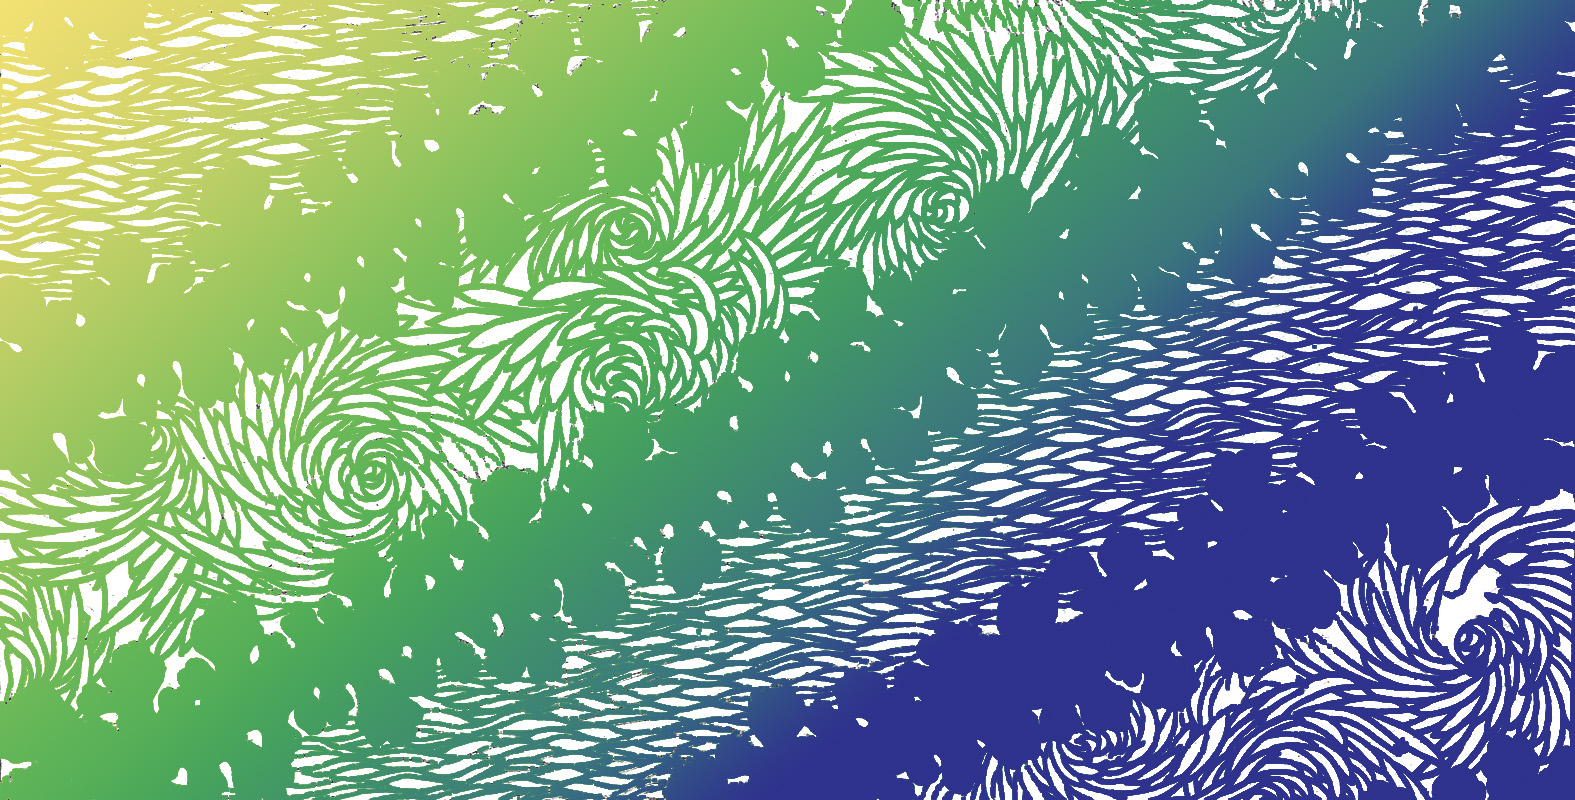 Motifs décoratifs tirés des pochoirs japonais de par Th. Lambert - Diagonales d'algues, d'ondes et de chrysanthèmes